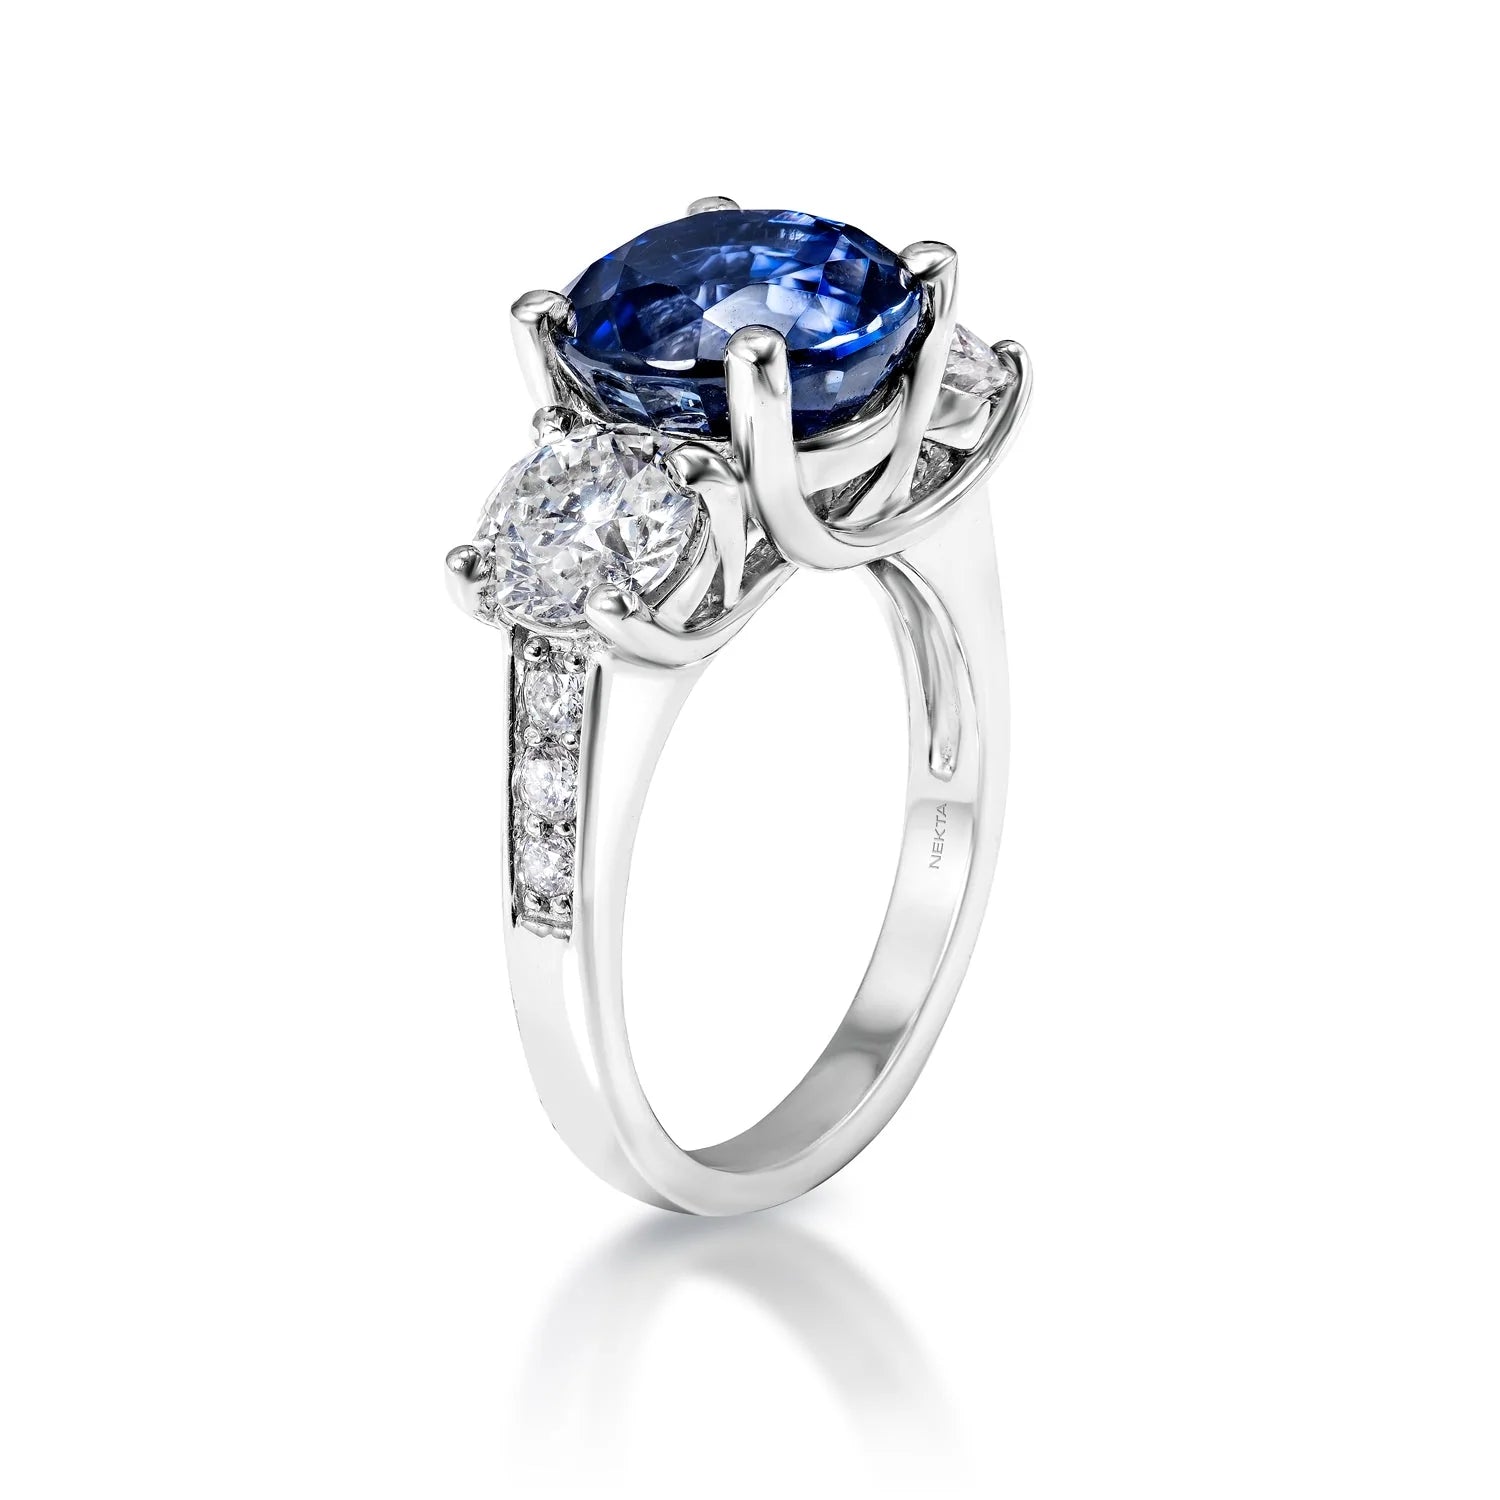 Adaline 8 Carat Round Brilliant Blue Sapphire Ring in 18 Karat White Gold Side View